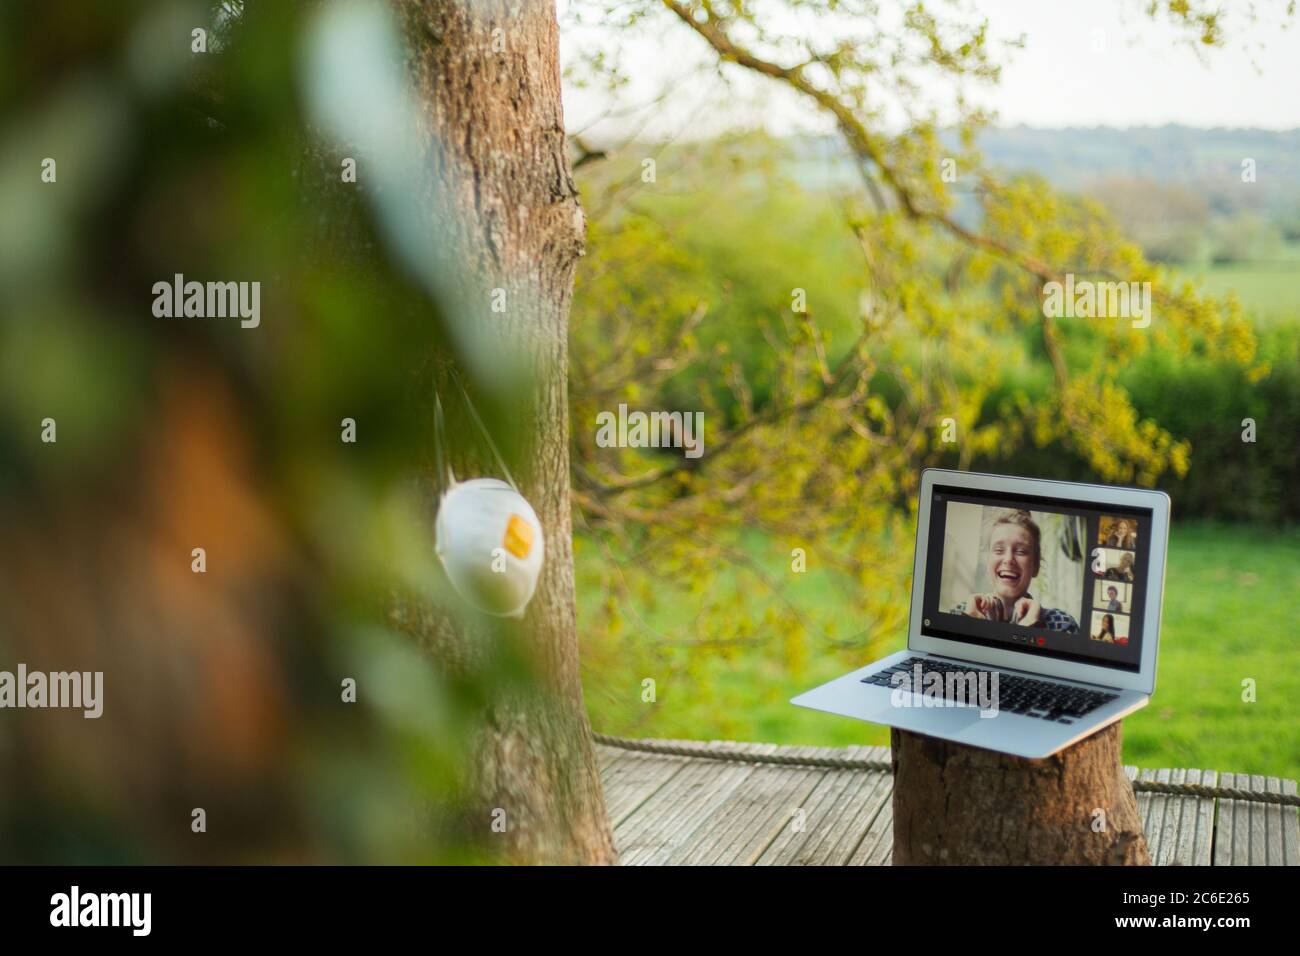 Masque de visage accroché à l'arbre à côté de vos amis discutant vidéo sur ordinateur portable Banque D'Images